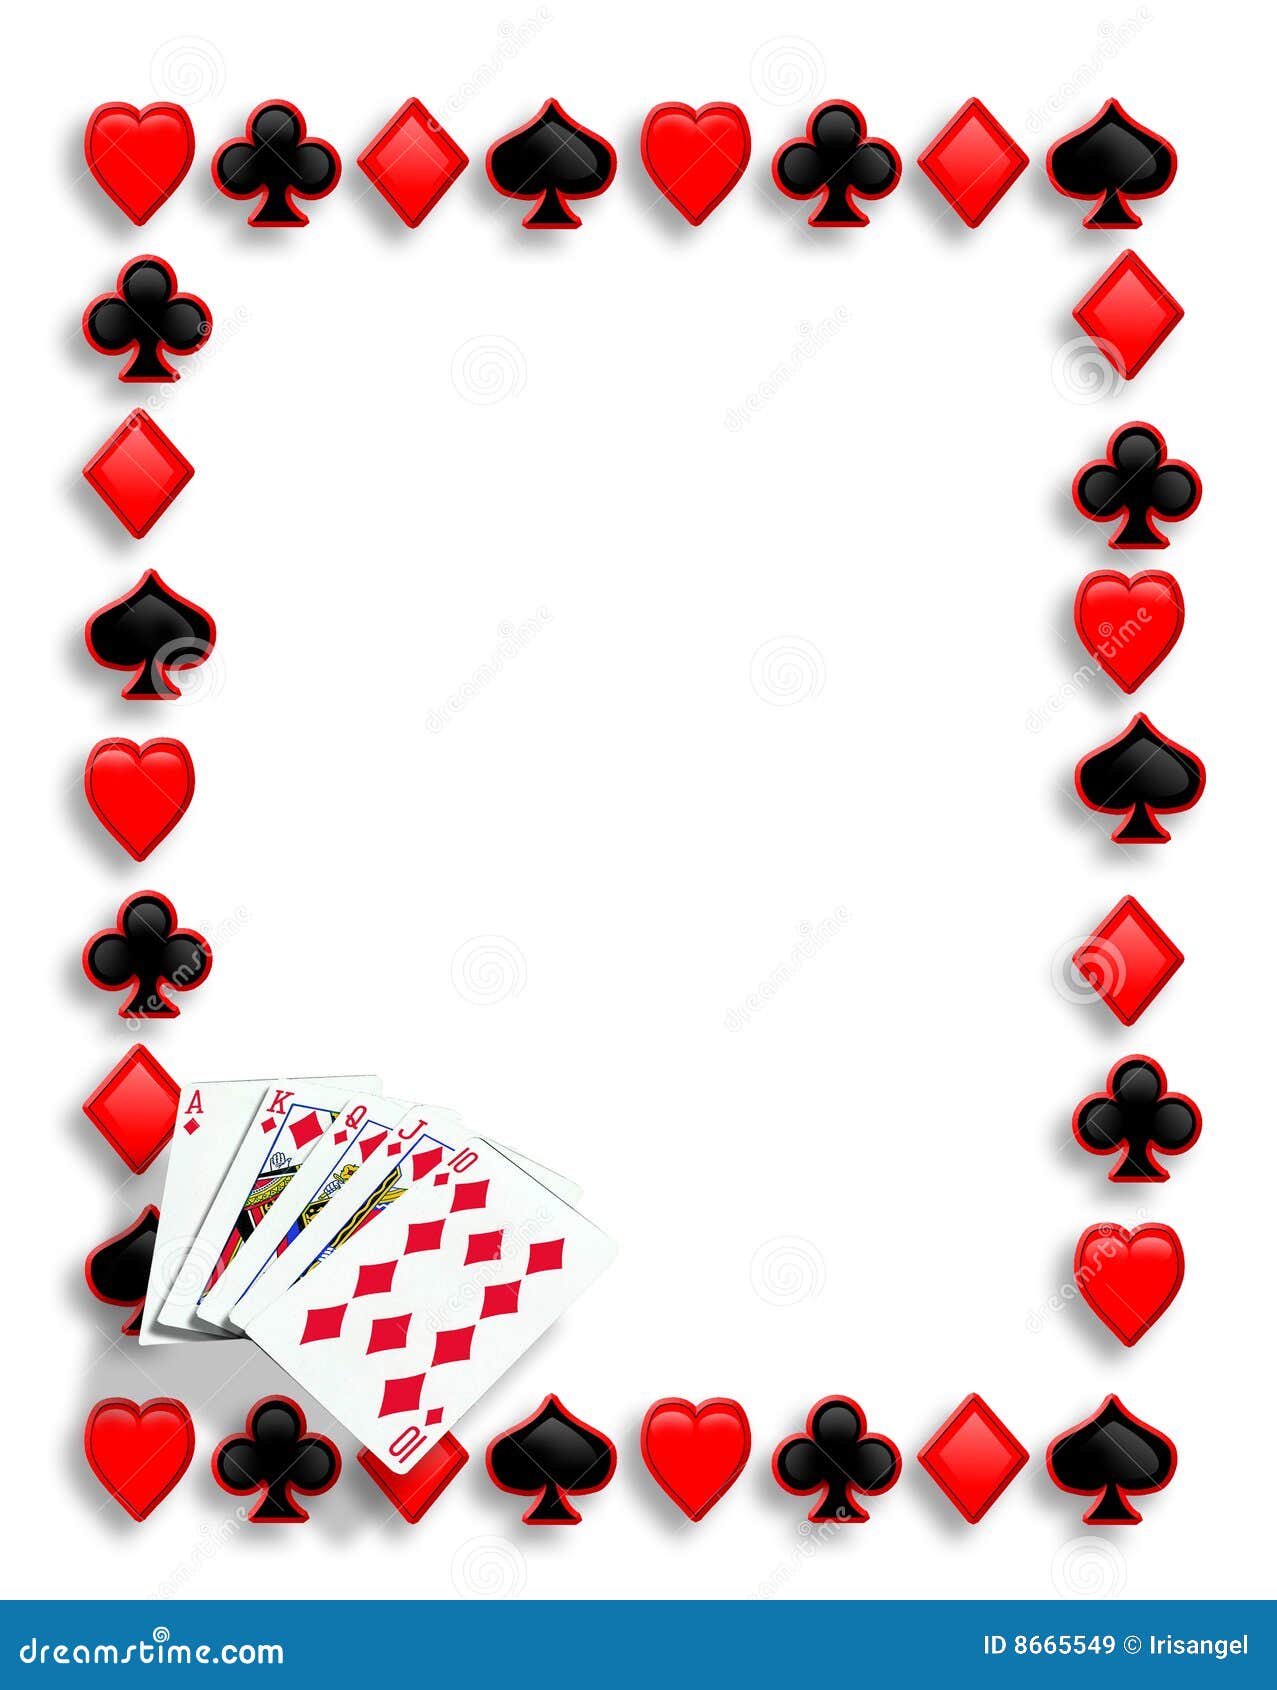 cards-poker-border-royal-flush-8665549.jpg